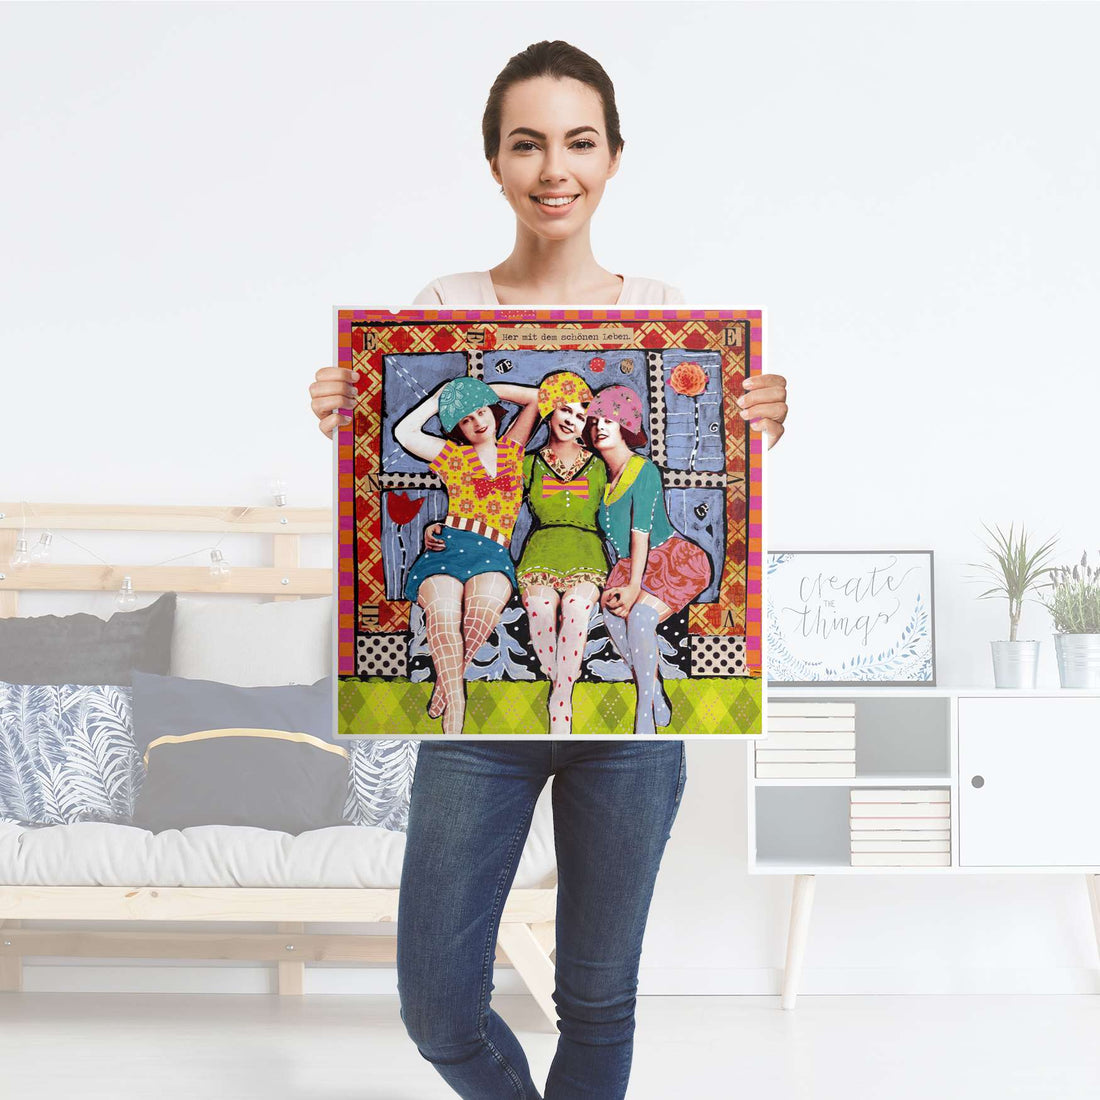 Möbel Klebefolie Her mit dem schönen Leben - IKEA Hemnes Beistelltisch 55x55 cm - Folie